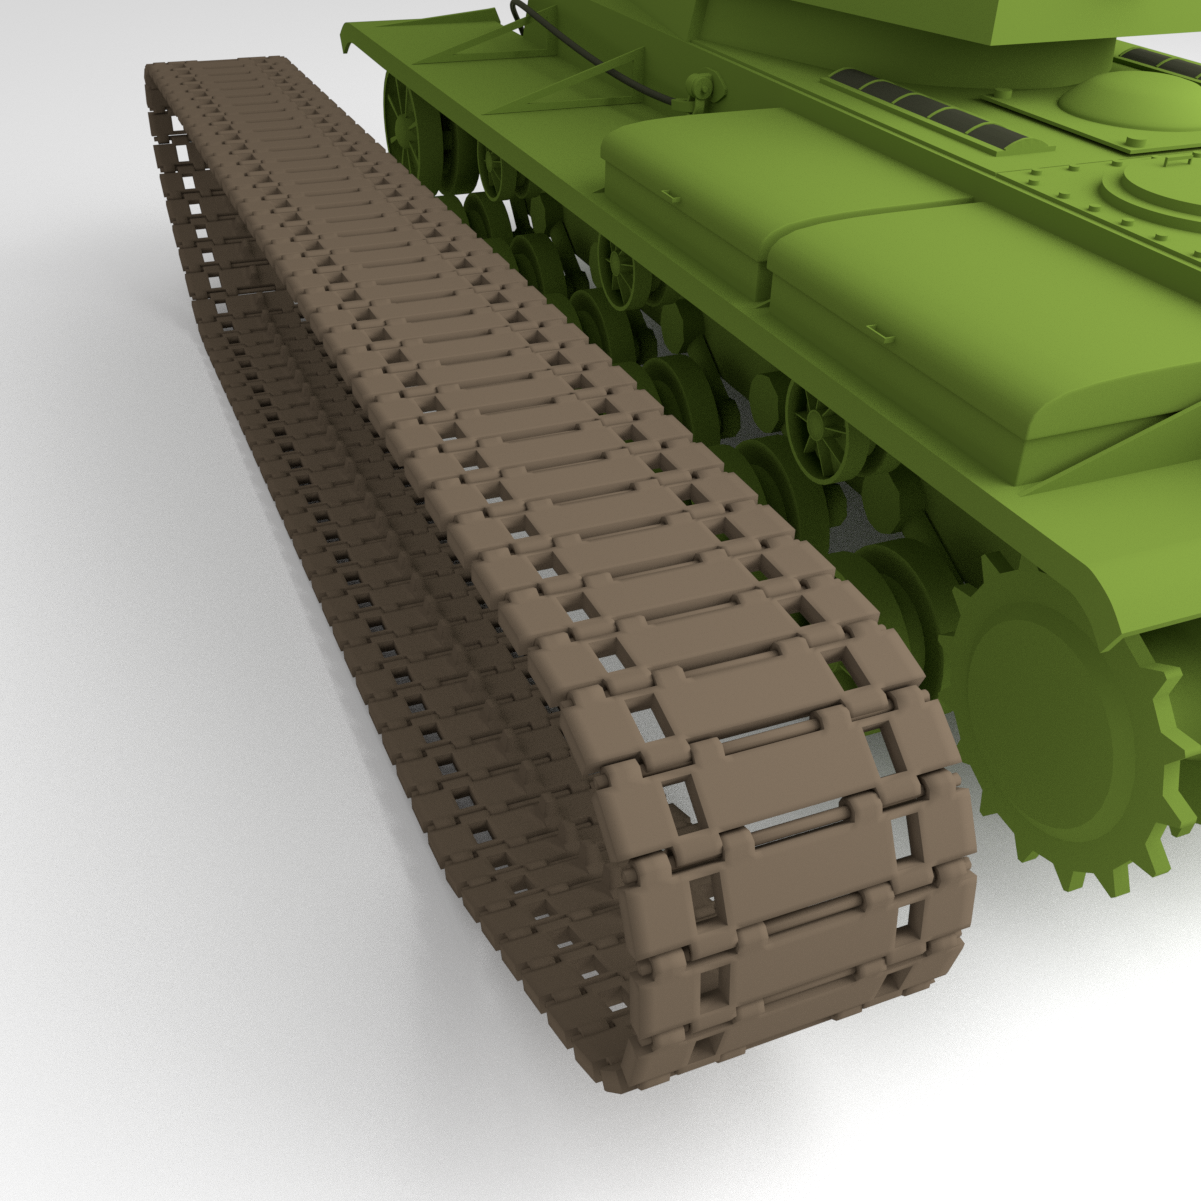 Soviet tank KV-1 model 1942